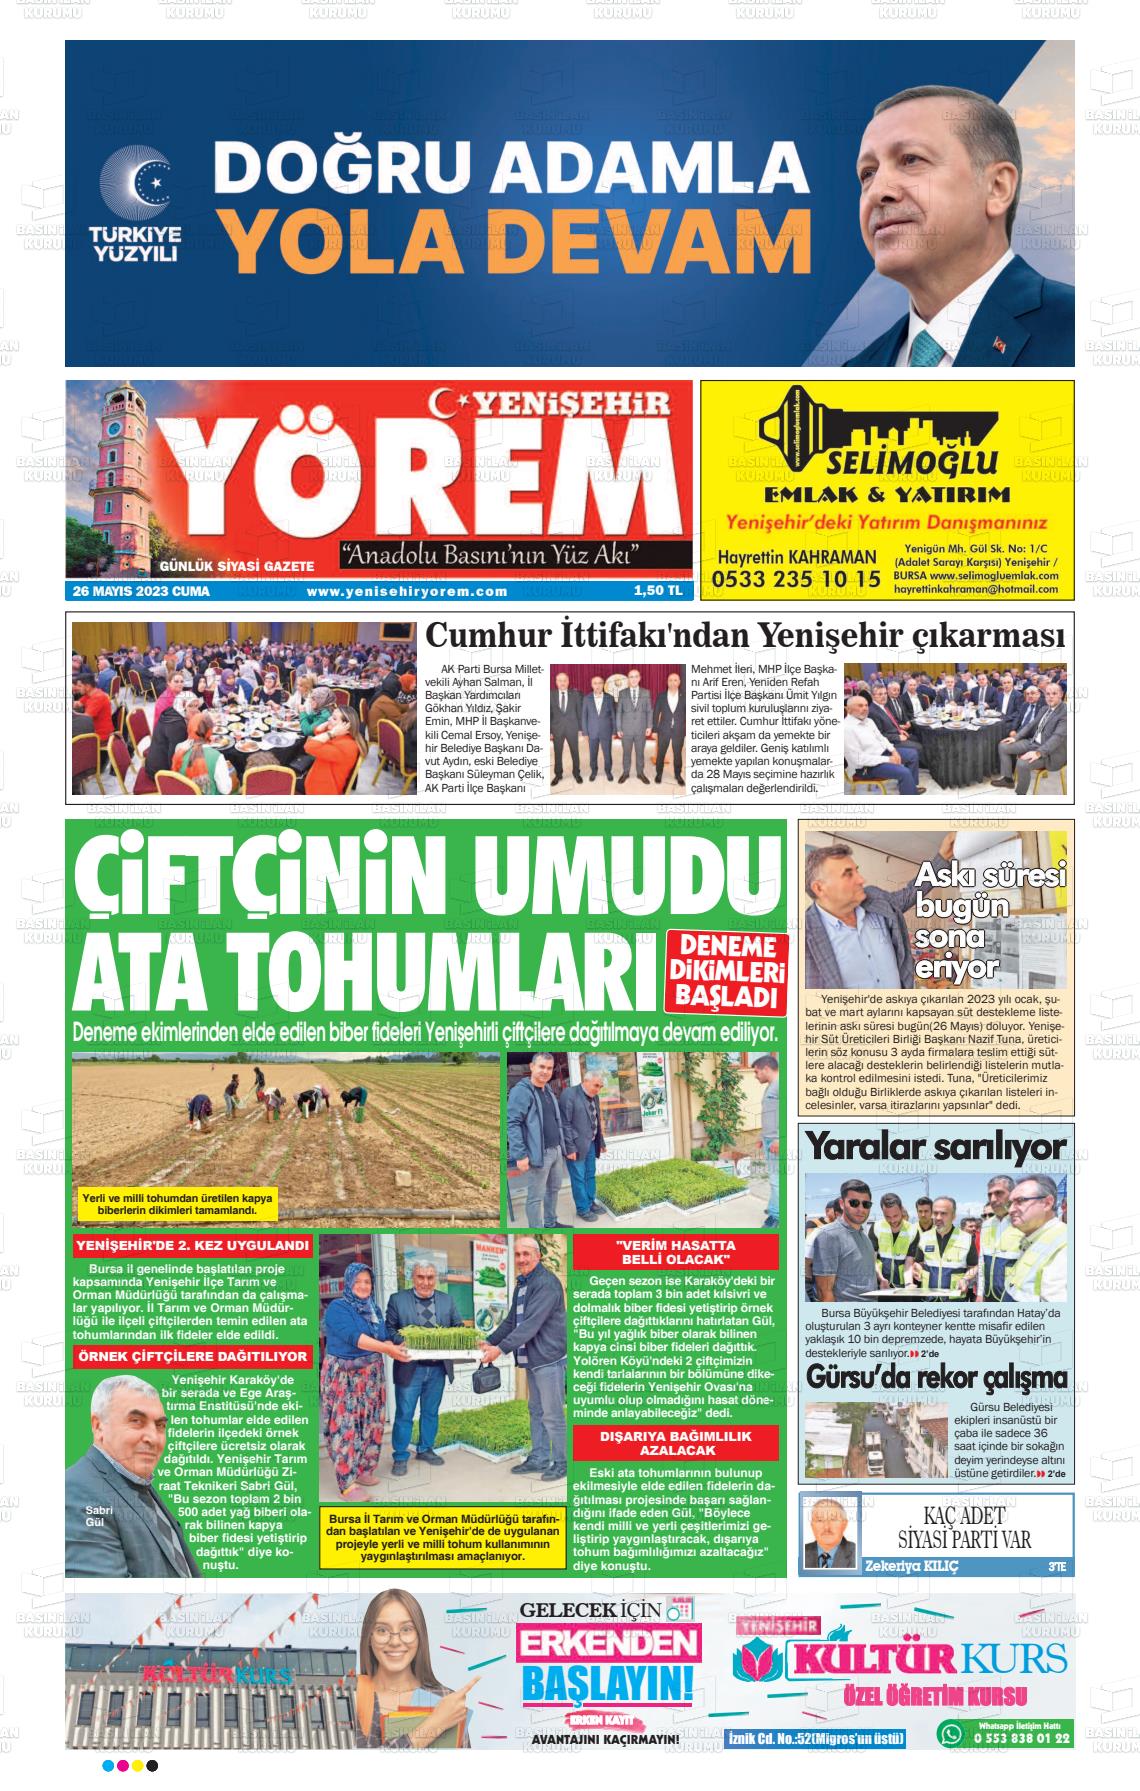 26 Mayıs 2023 Yenişehir Yörem Gazete Manşeti